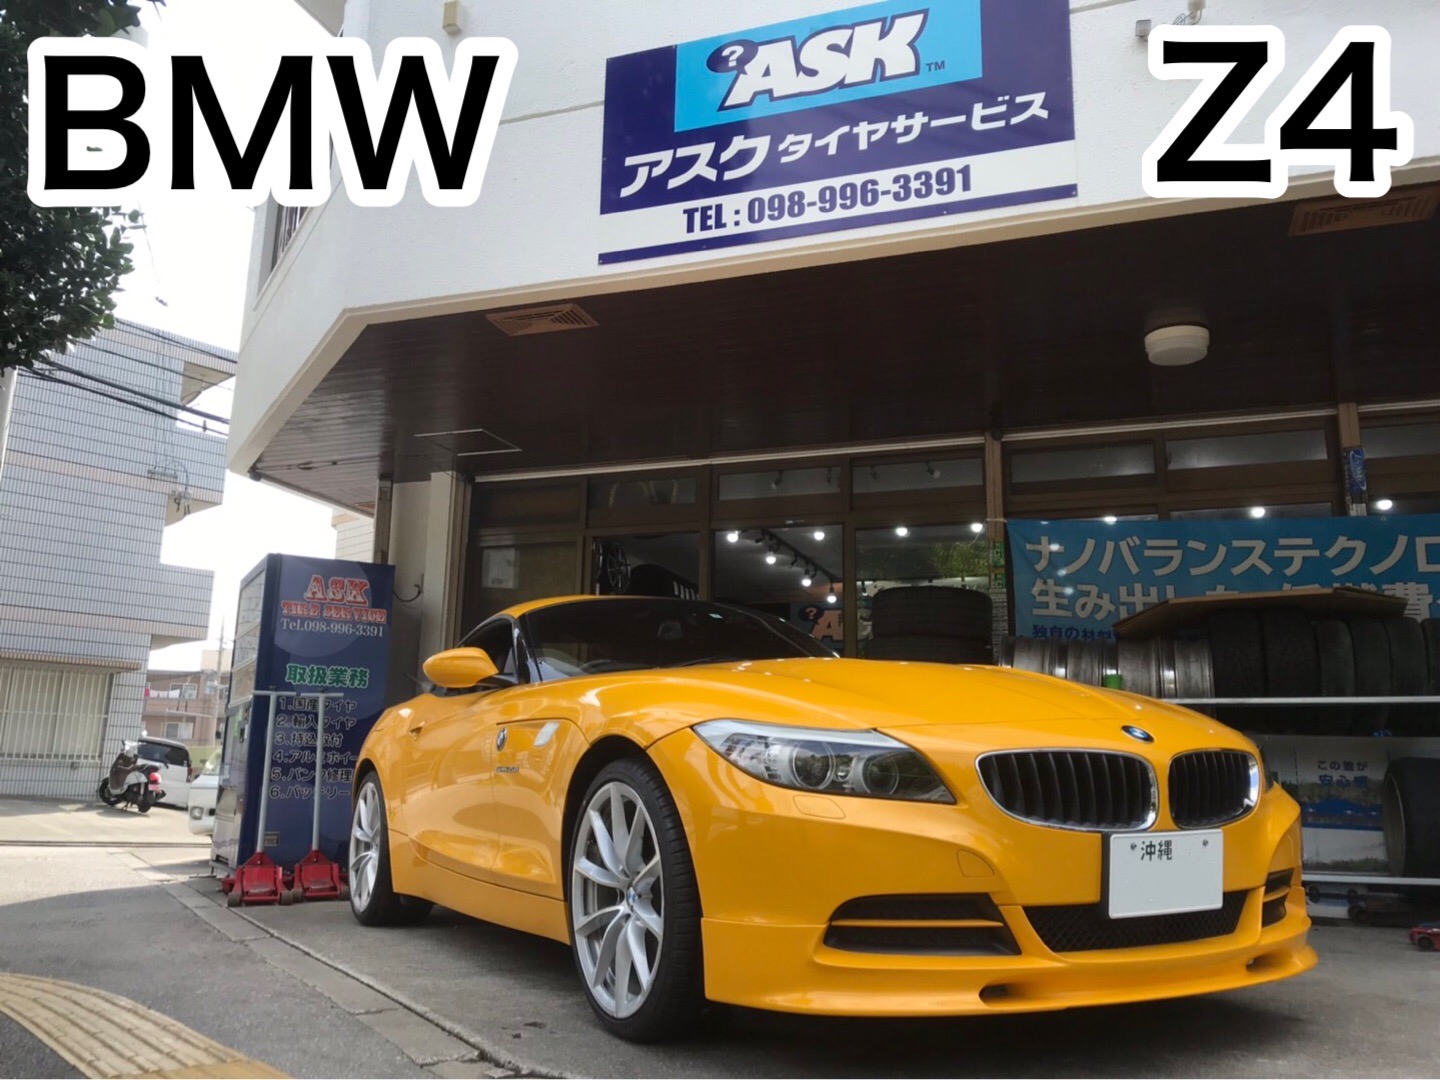 Bmw Z4 プレミアムタイヤ交換 F225 35zr19 R255 30zr19 沖縄の激安タイヤ販売店 持ち込みタイヤ取付店 Askタイヤ サービス